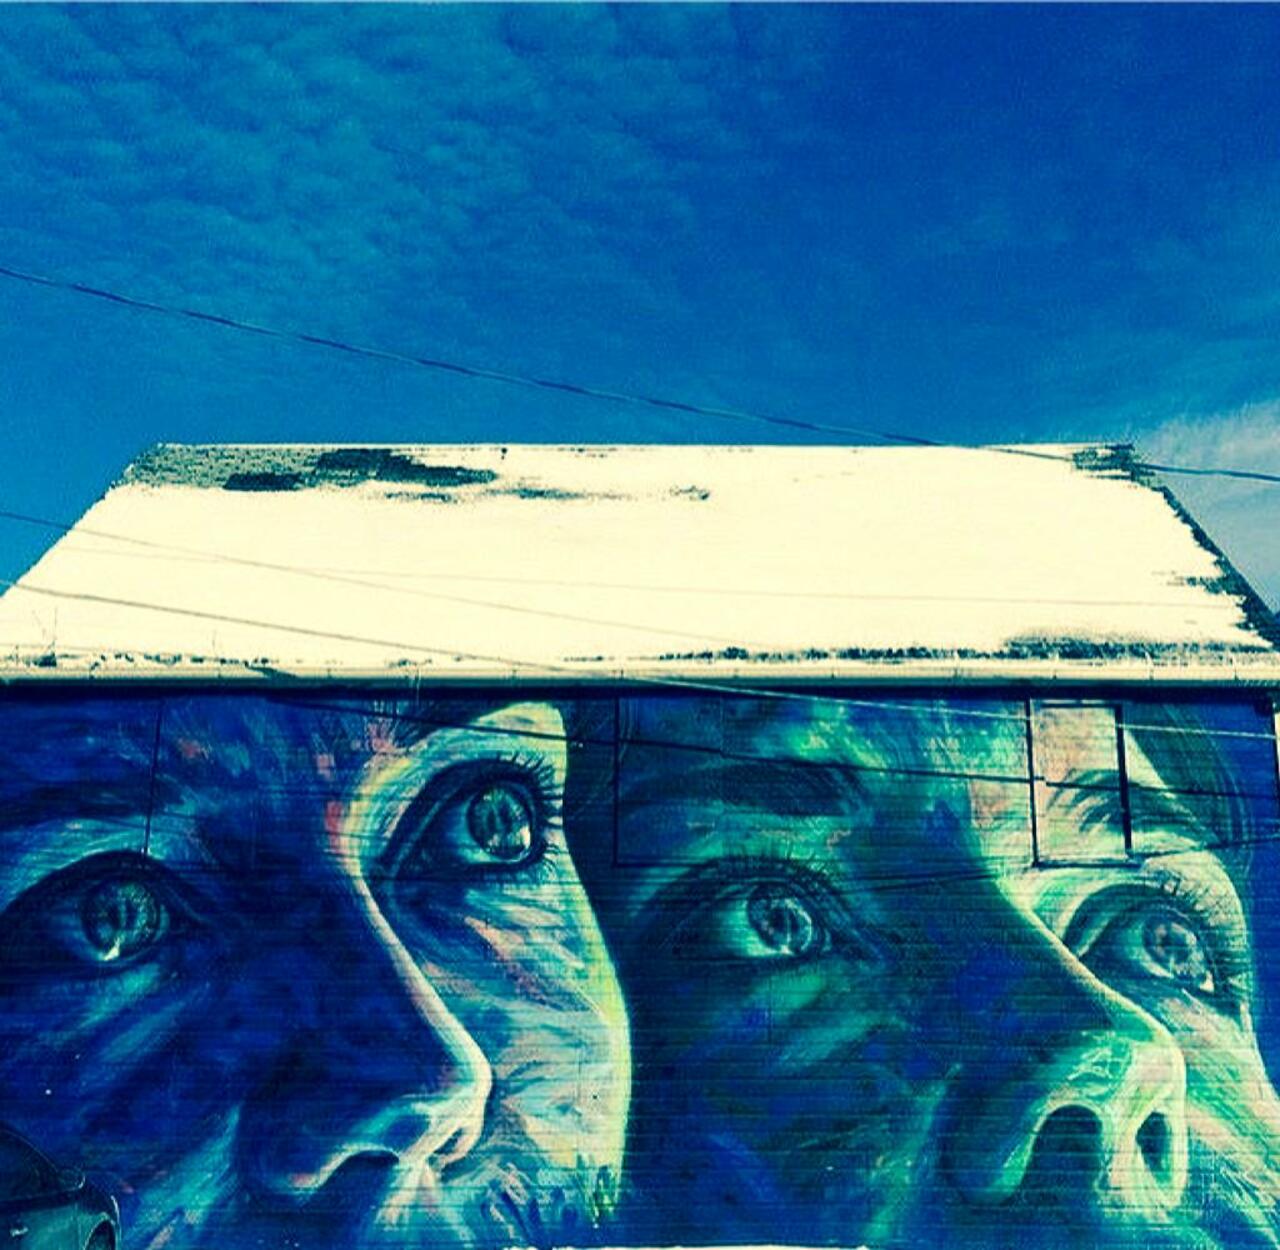 #graffitiart #graffiti #urbanart #muralart #mural #murales #StreetArt http://t.co/17JsjbO6nB